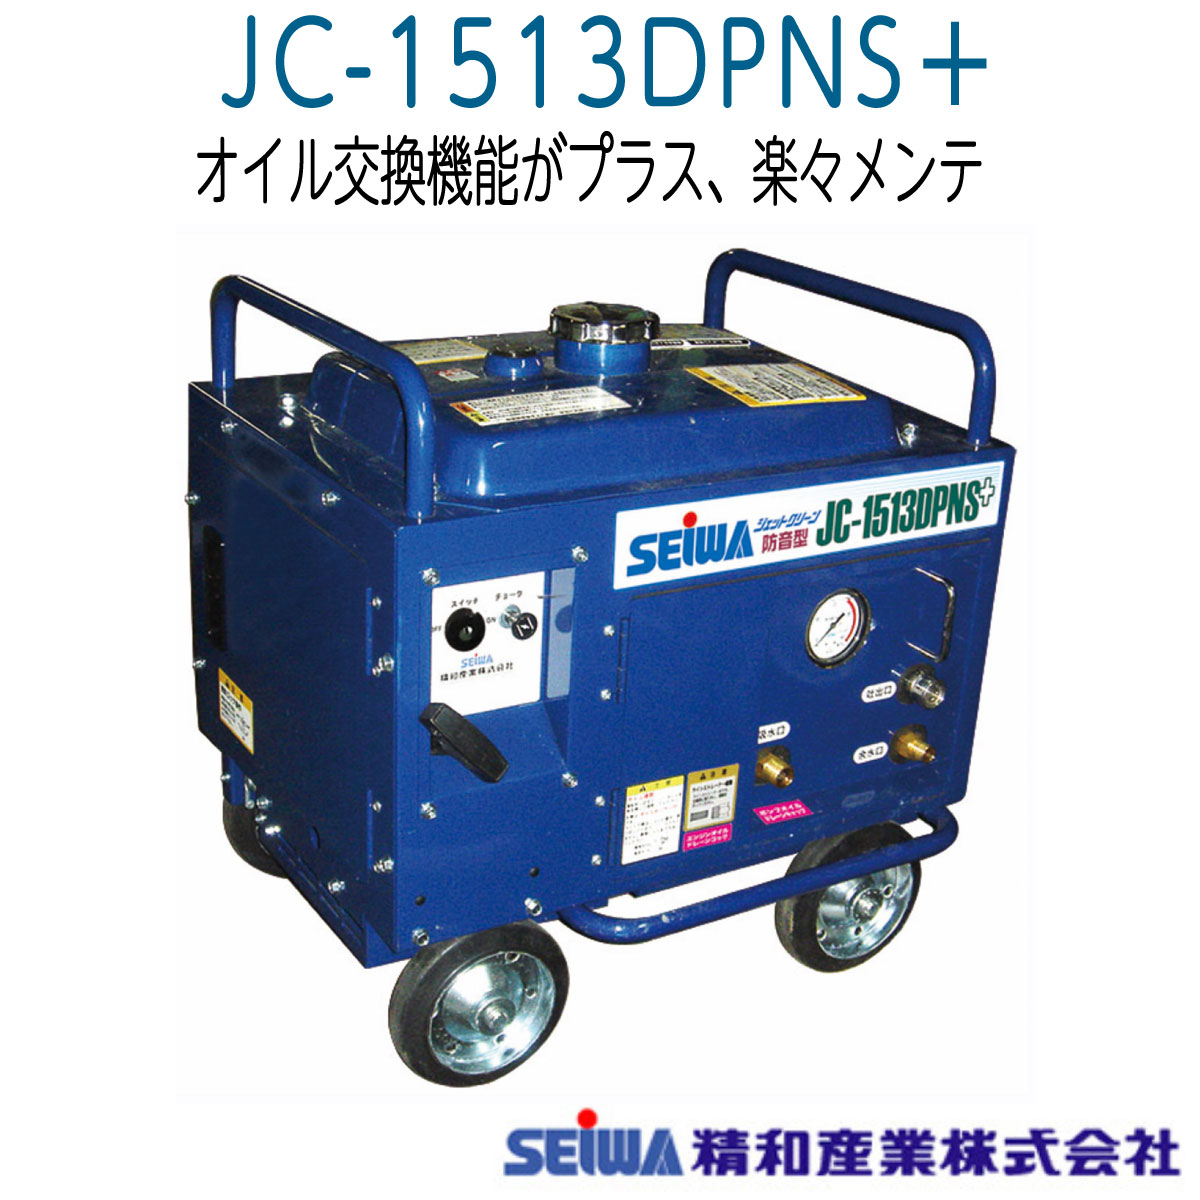 ディズニーコレクション □塗師□精和 新型 防音型洗浄機 JC-1612DPN